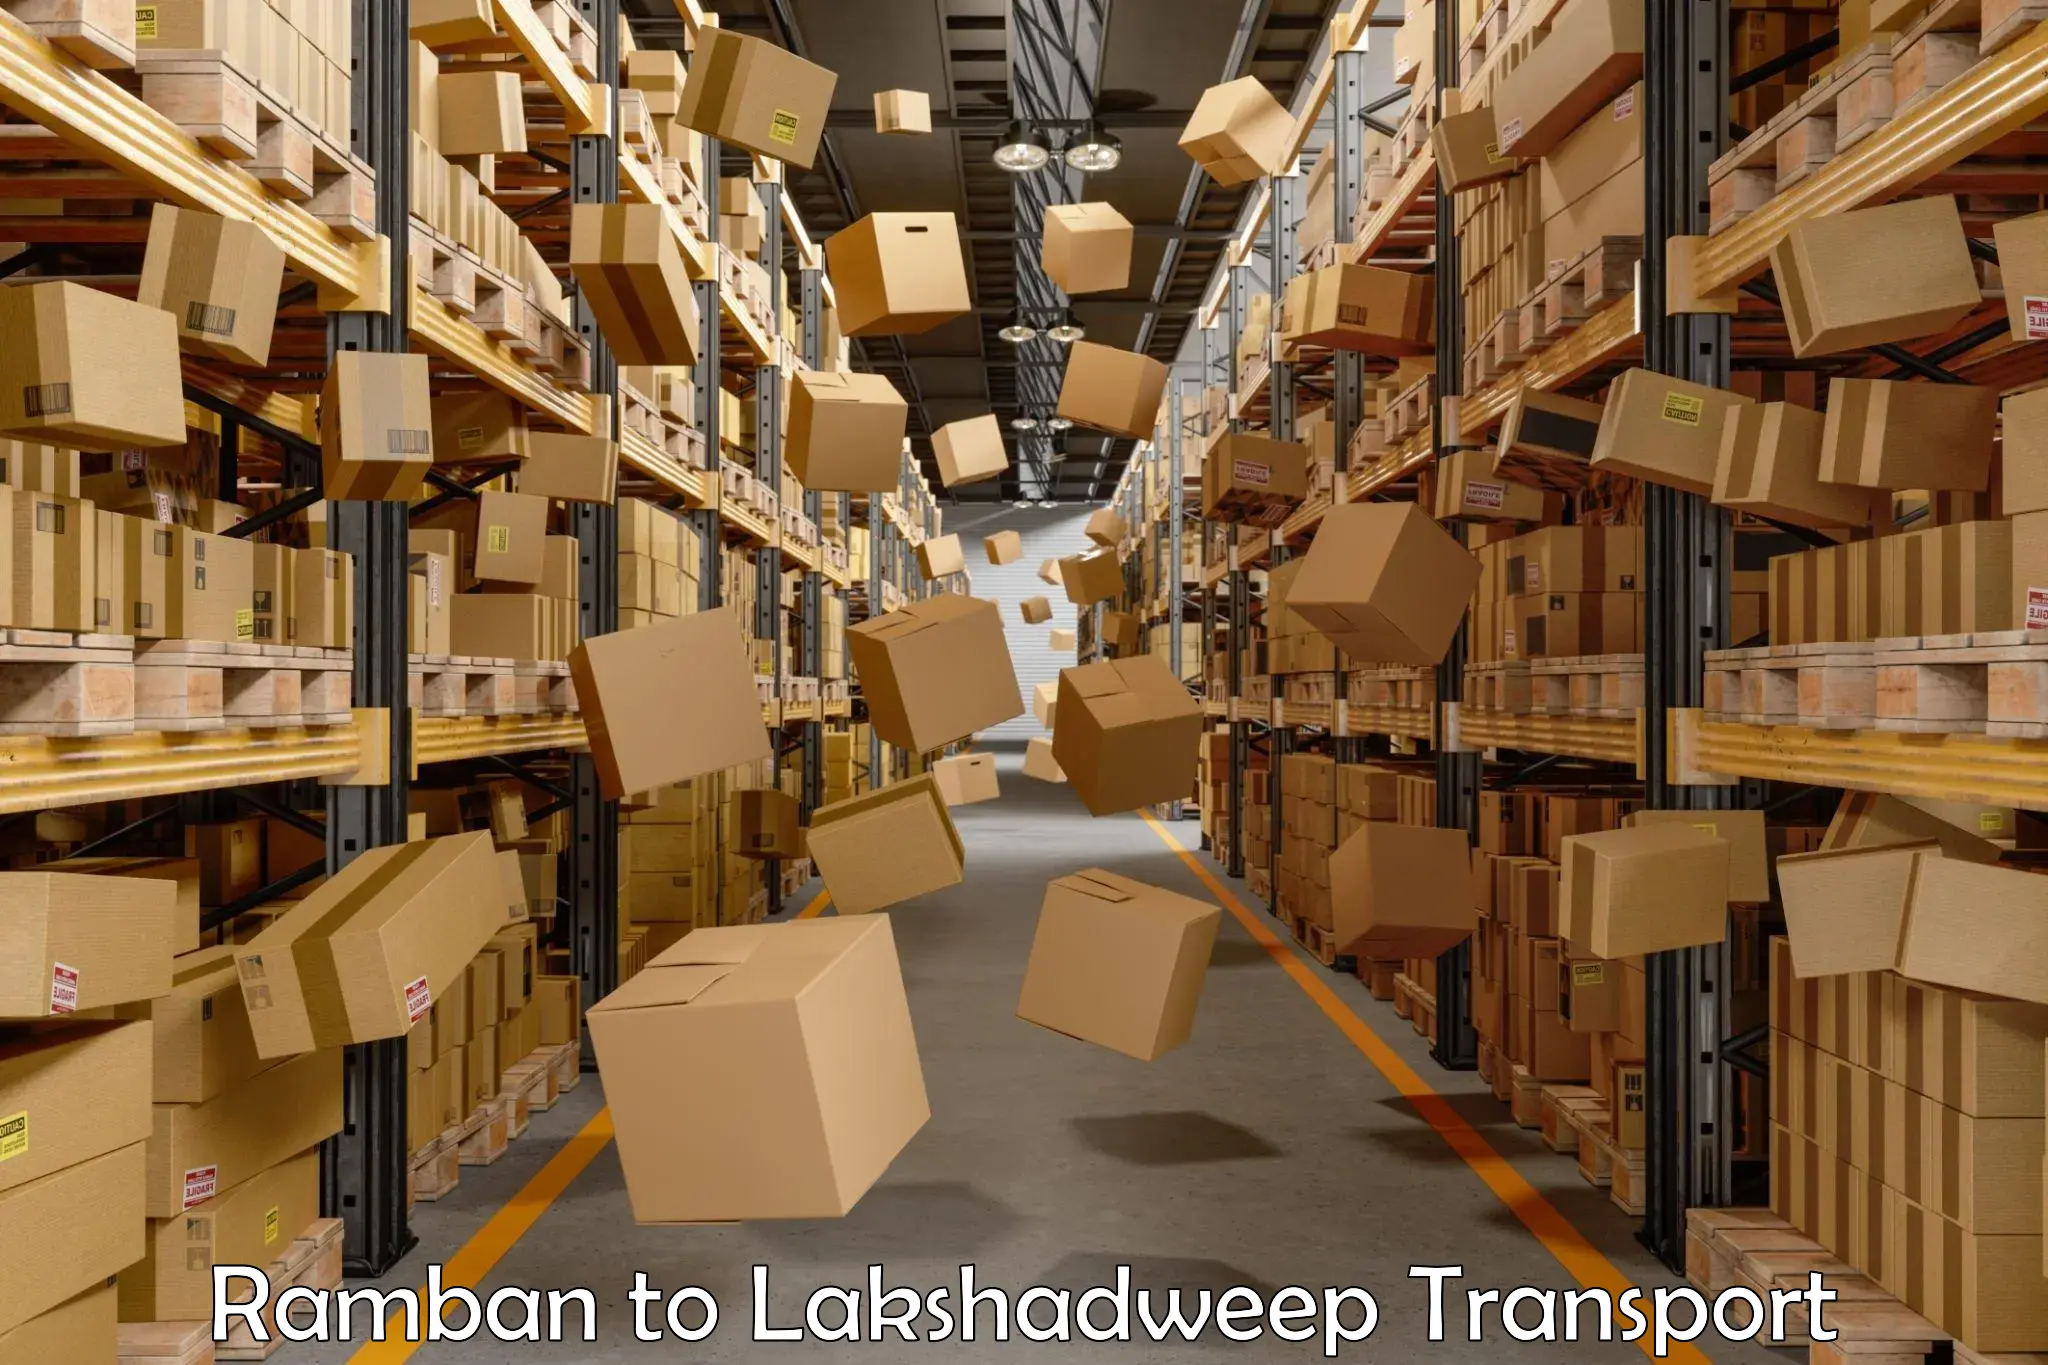 Pick up transport service Ramban to Lakshadweep